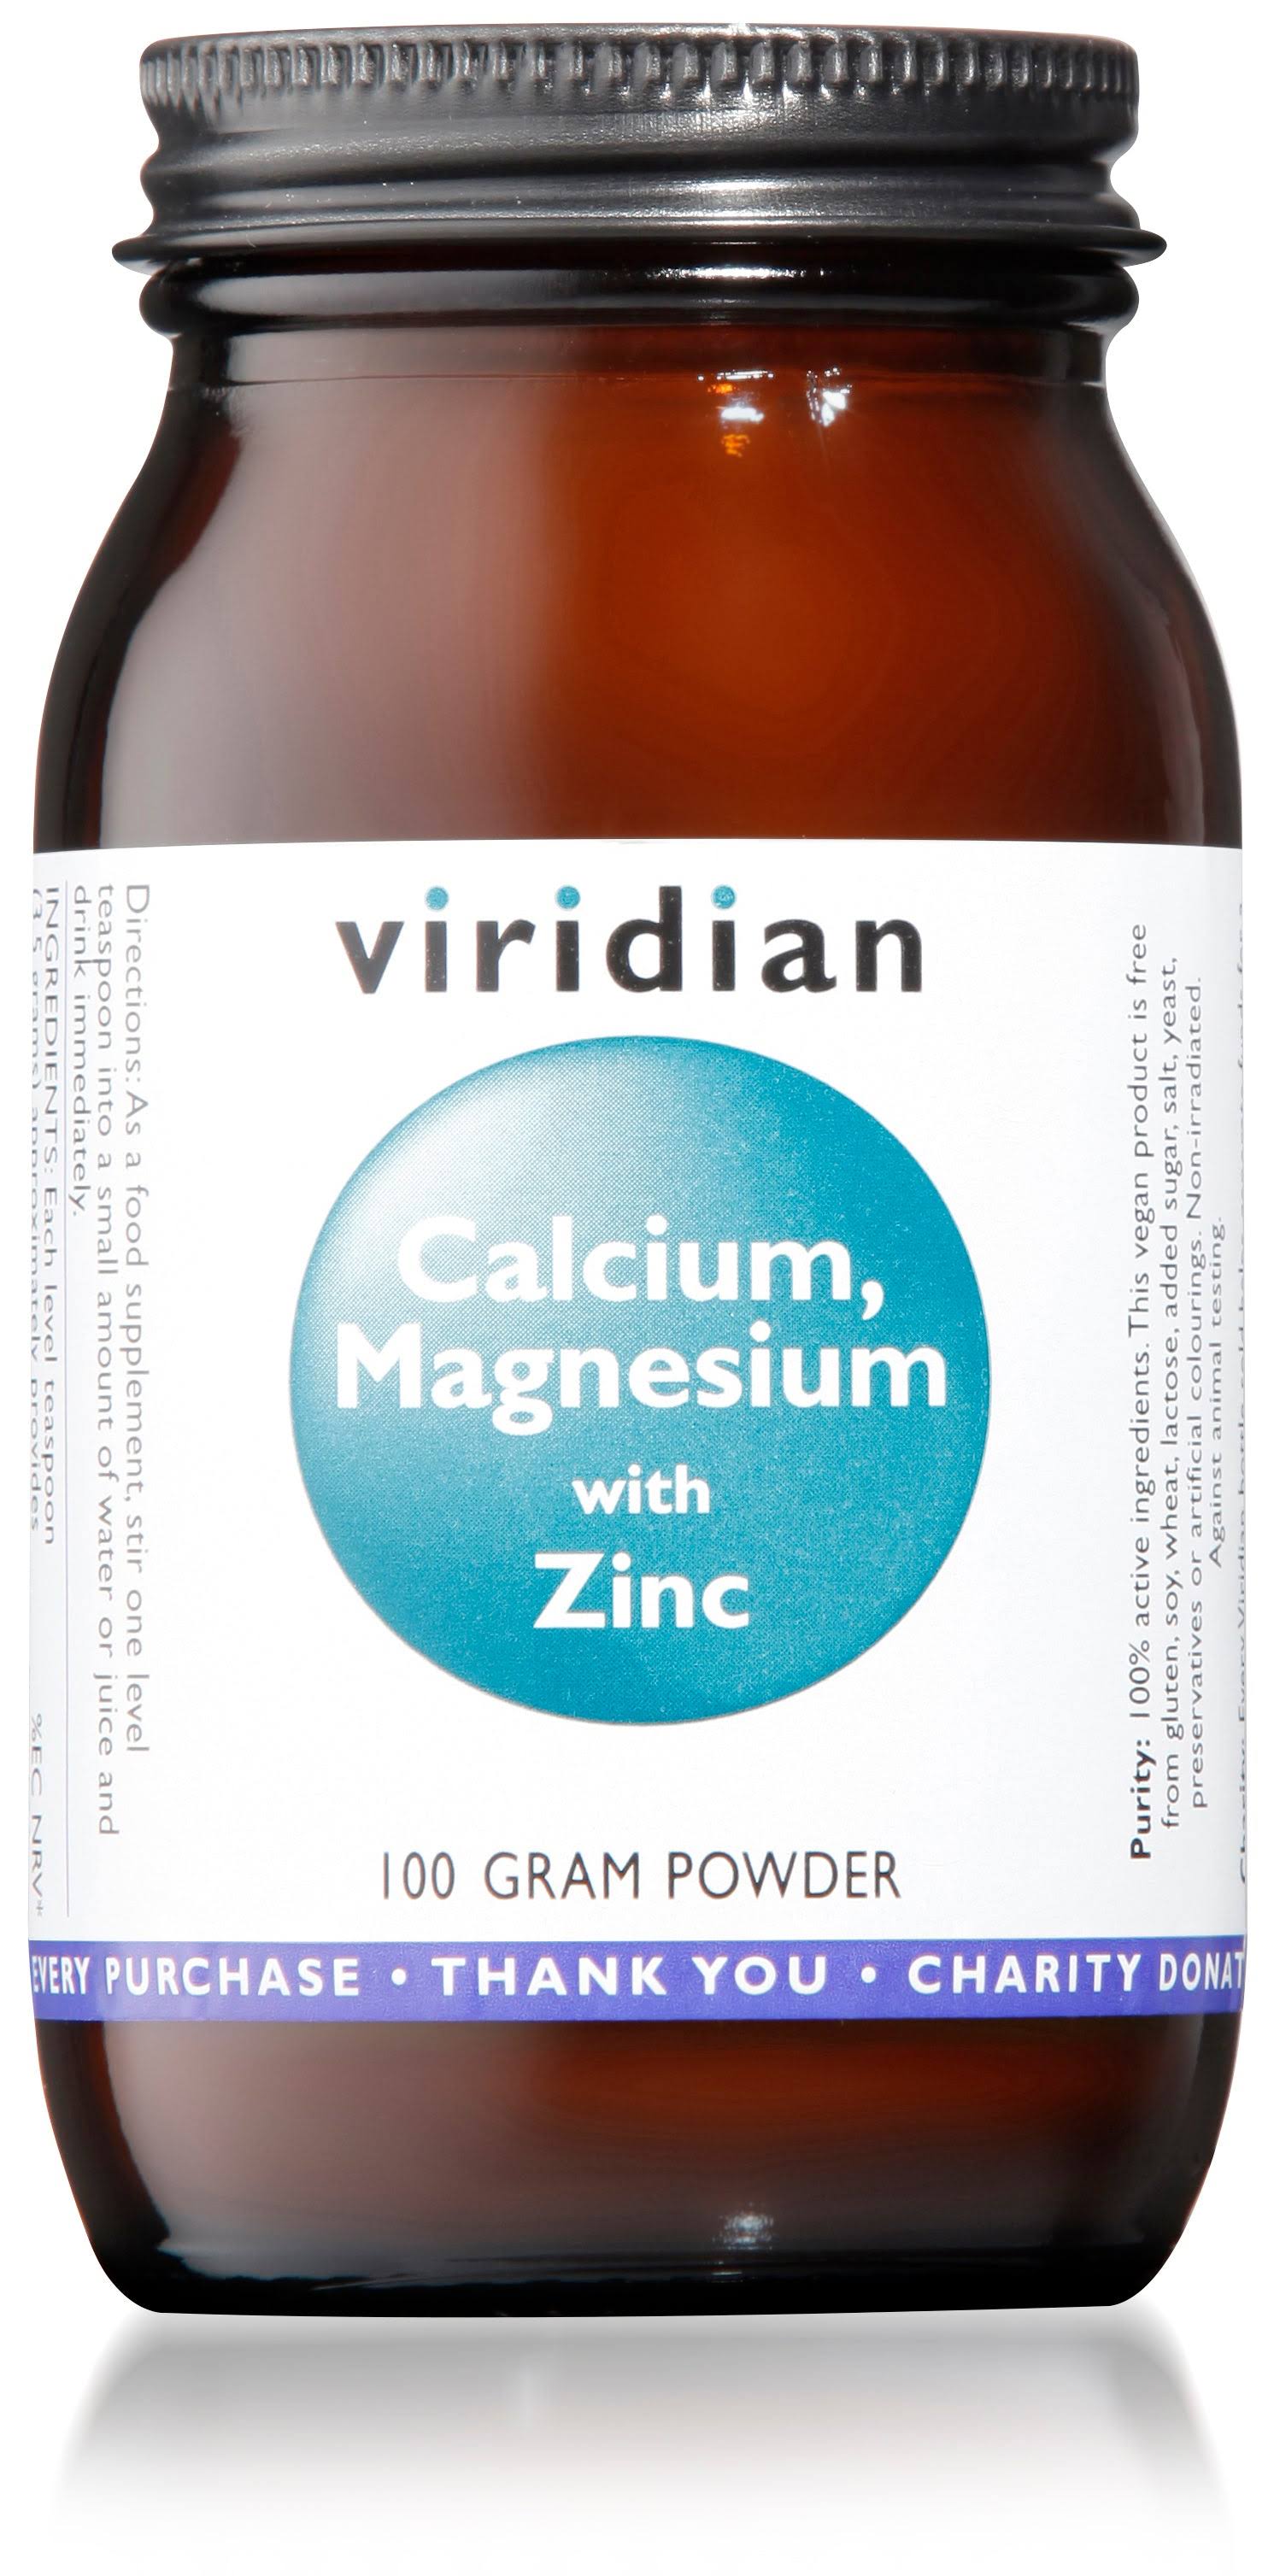 Viridian Calcium Magnesium Zinc Powder - 100g